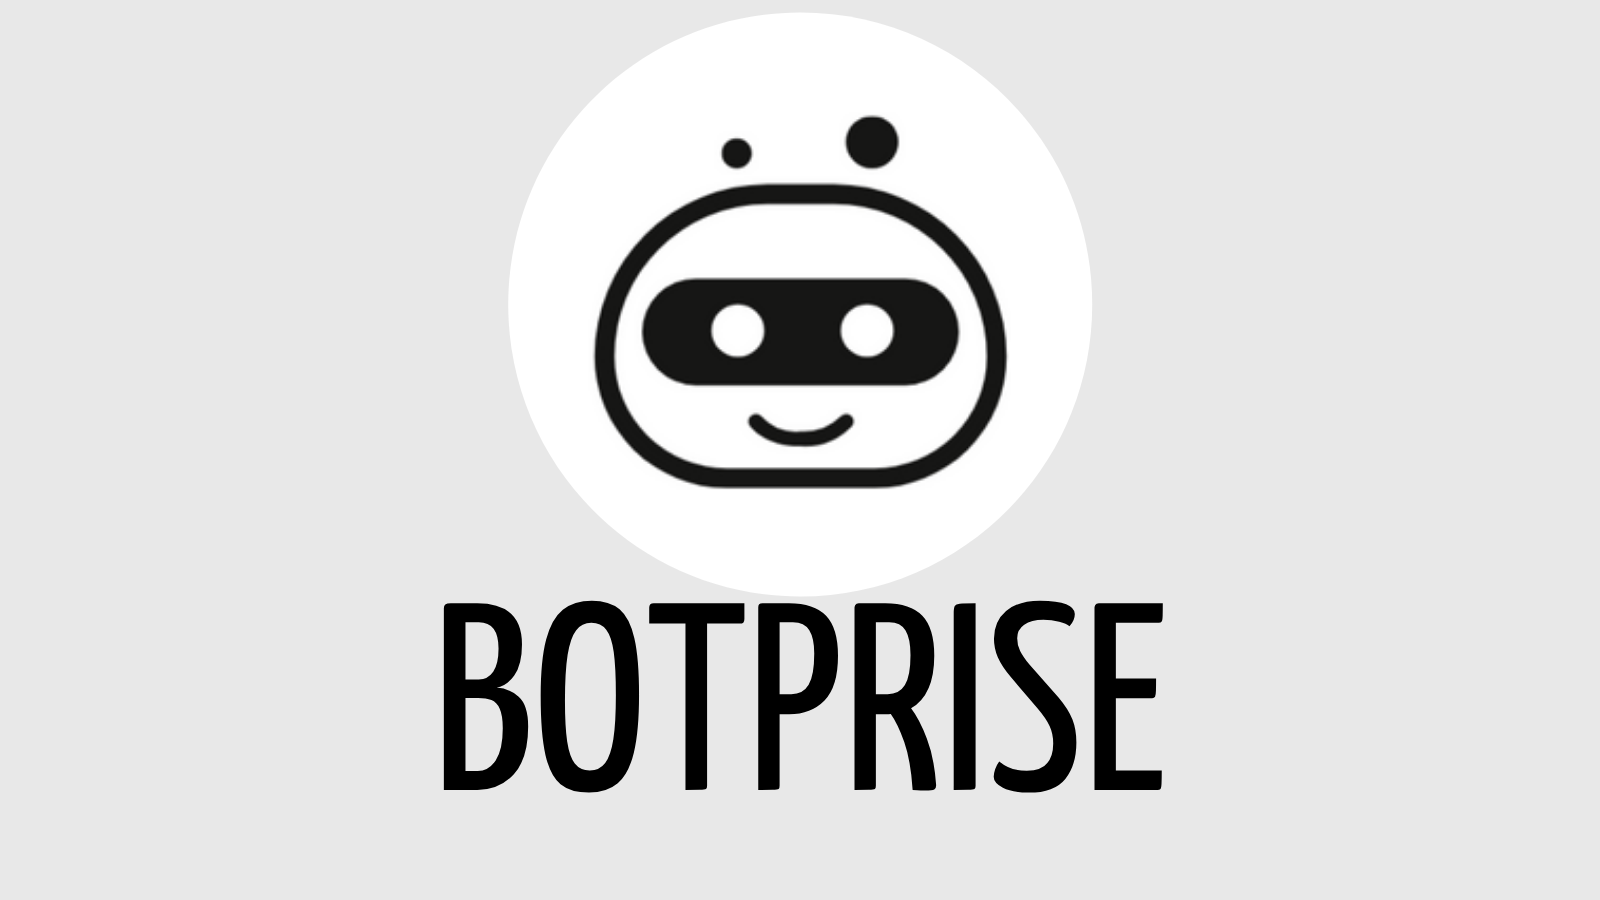 Botprise logo